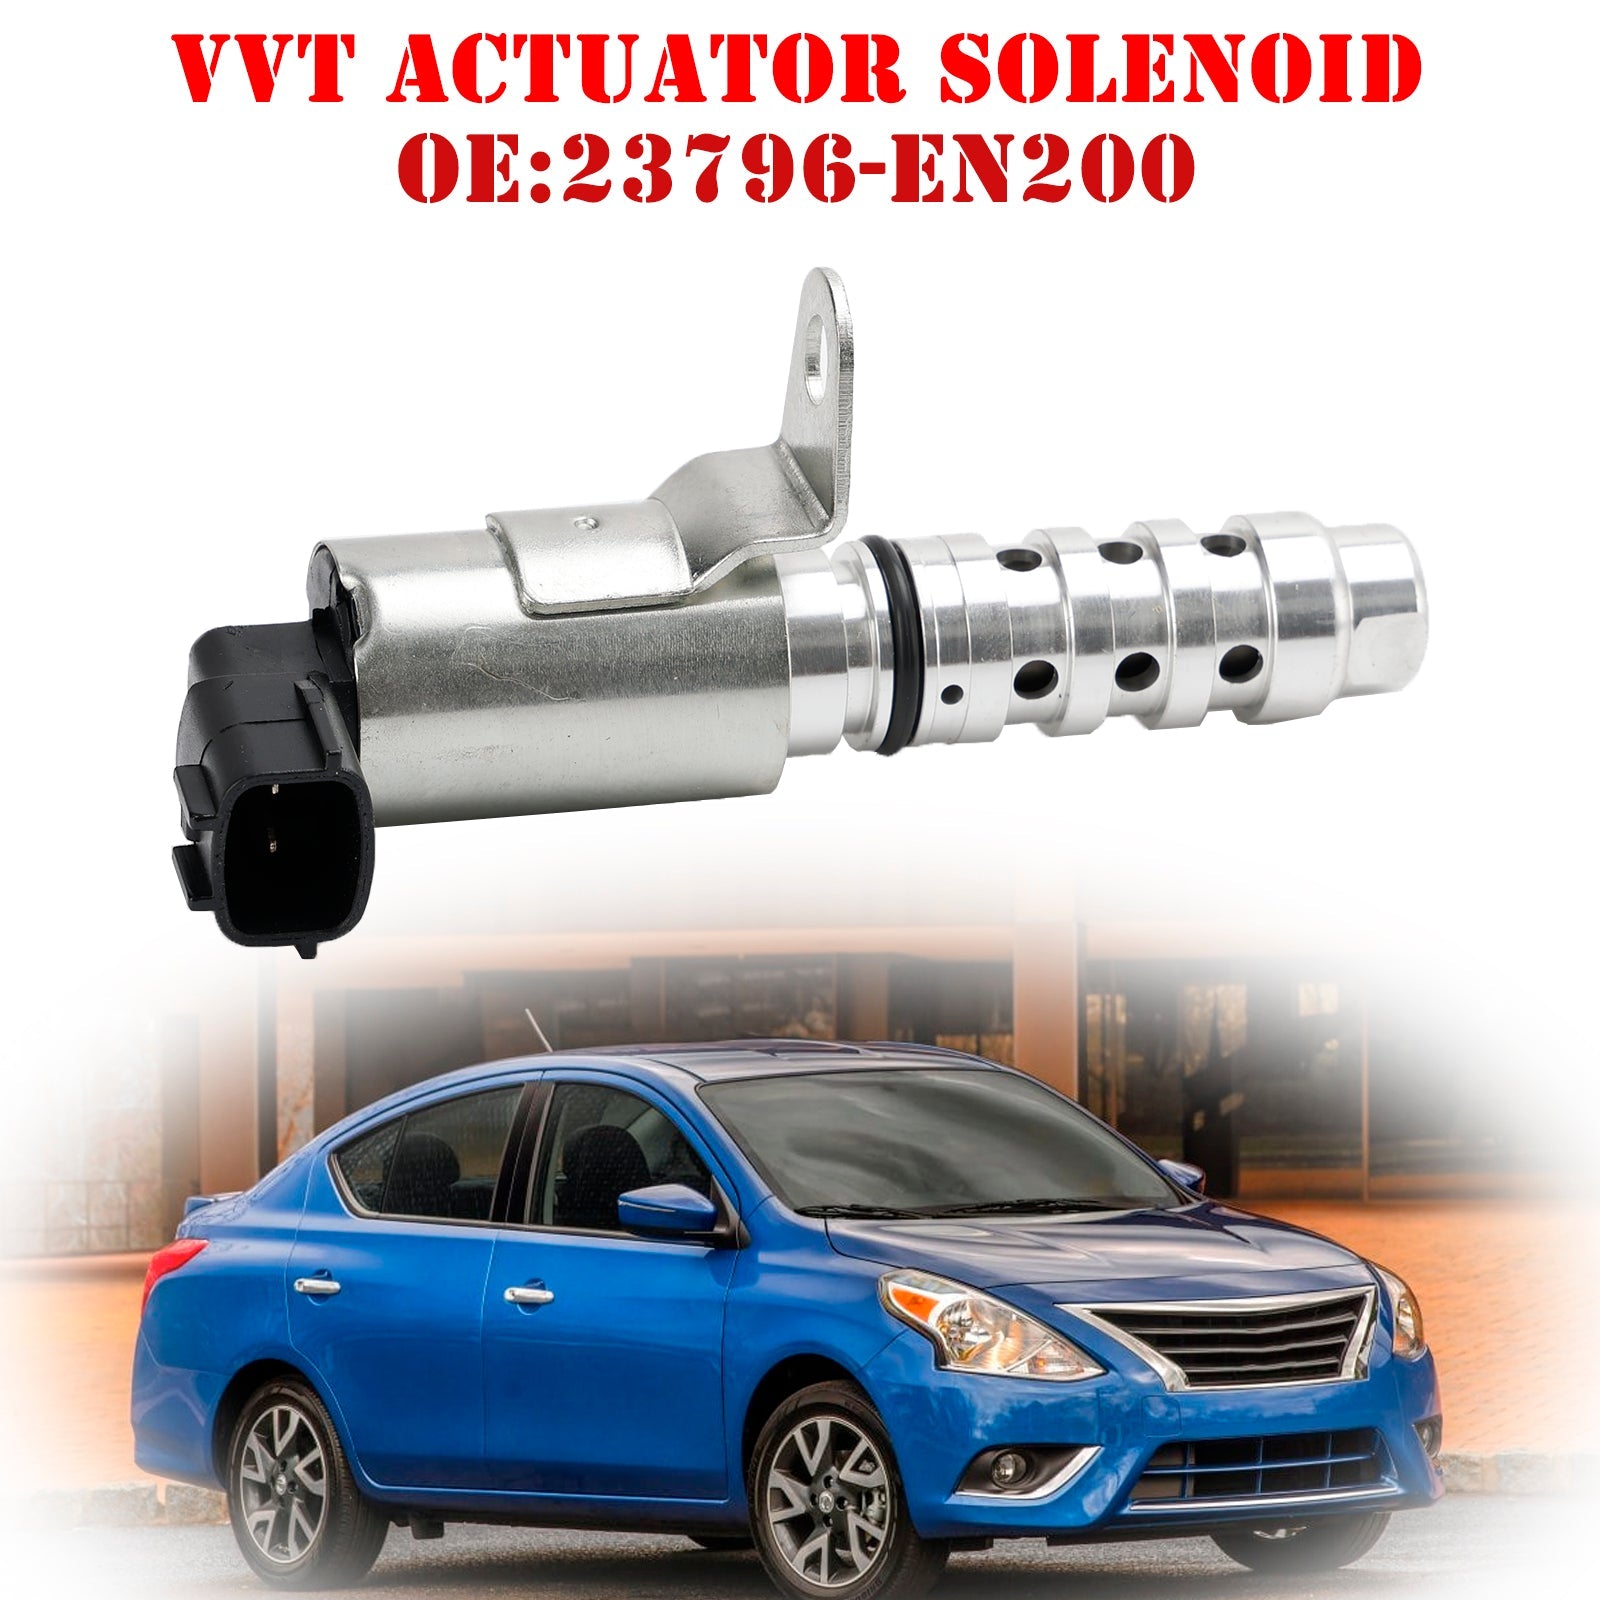 Solenoide del actuador VVT de sincronización variable del motor 23796-EN200 para Nissan Versa